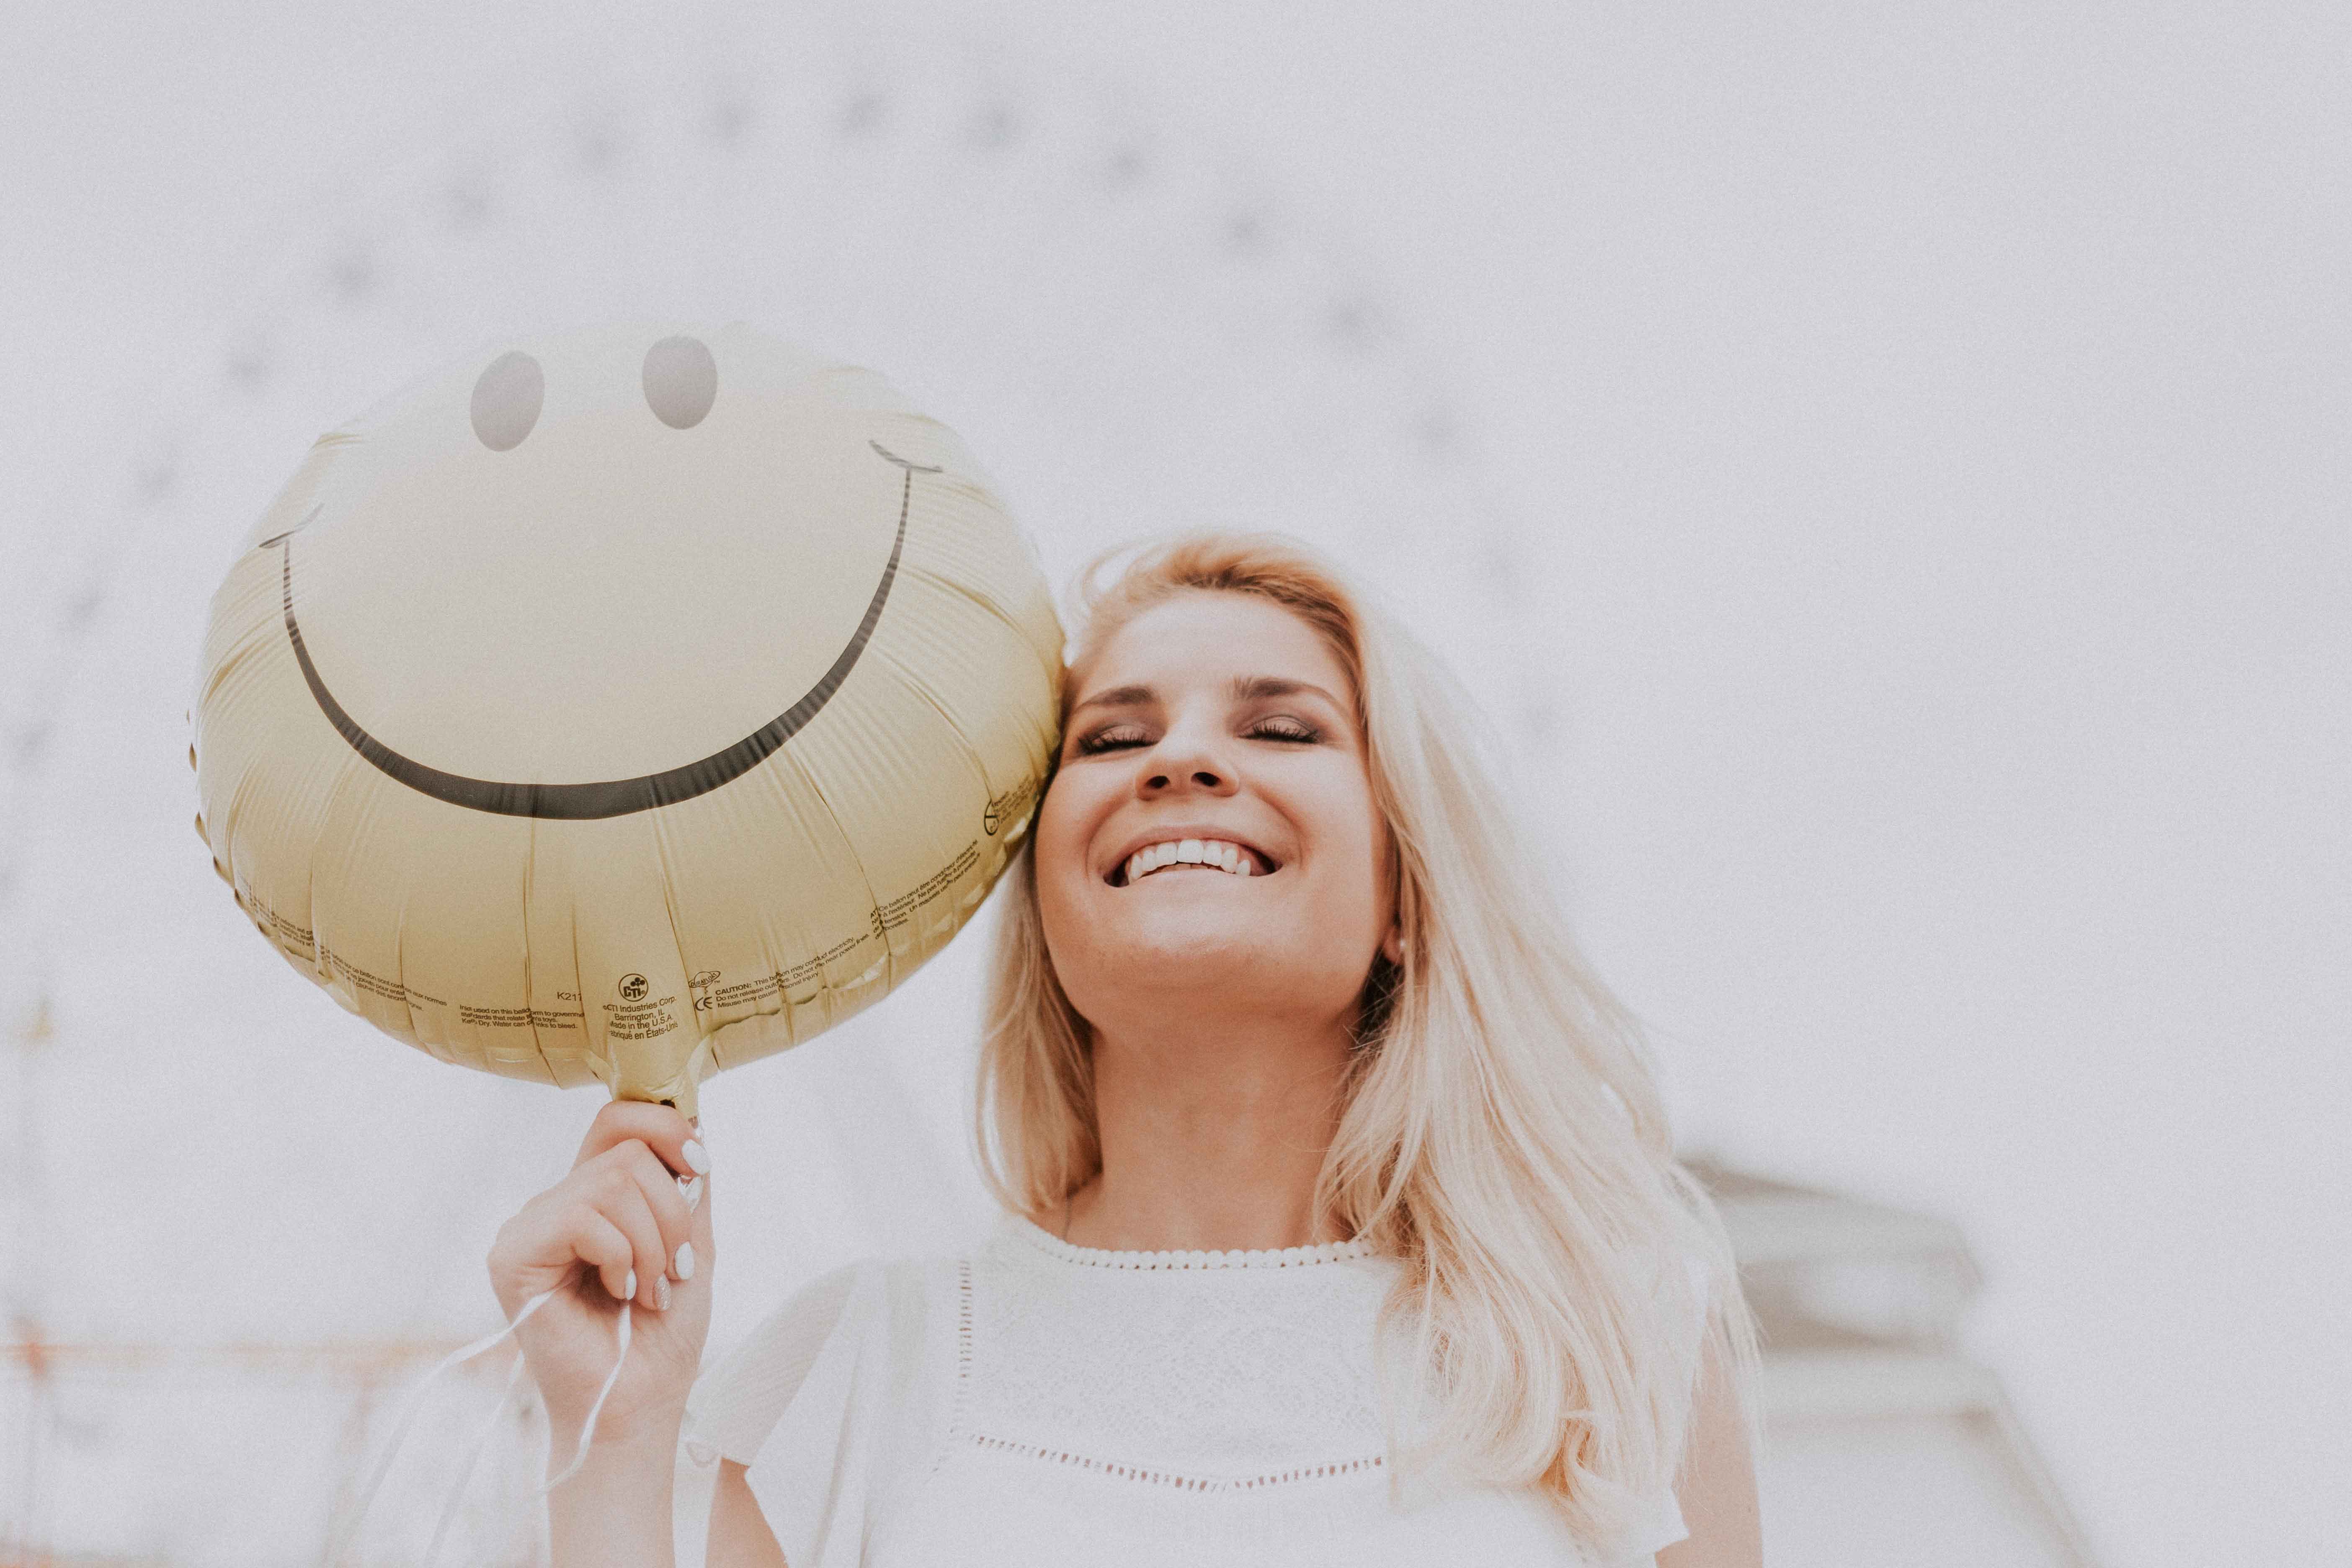 Femme heureuse avec un ballon smiley qui sourit - Quand rire et musique s'emmêlent